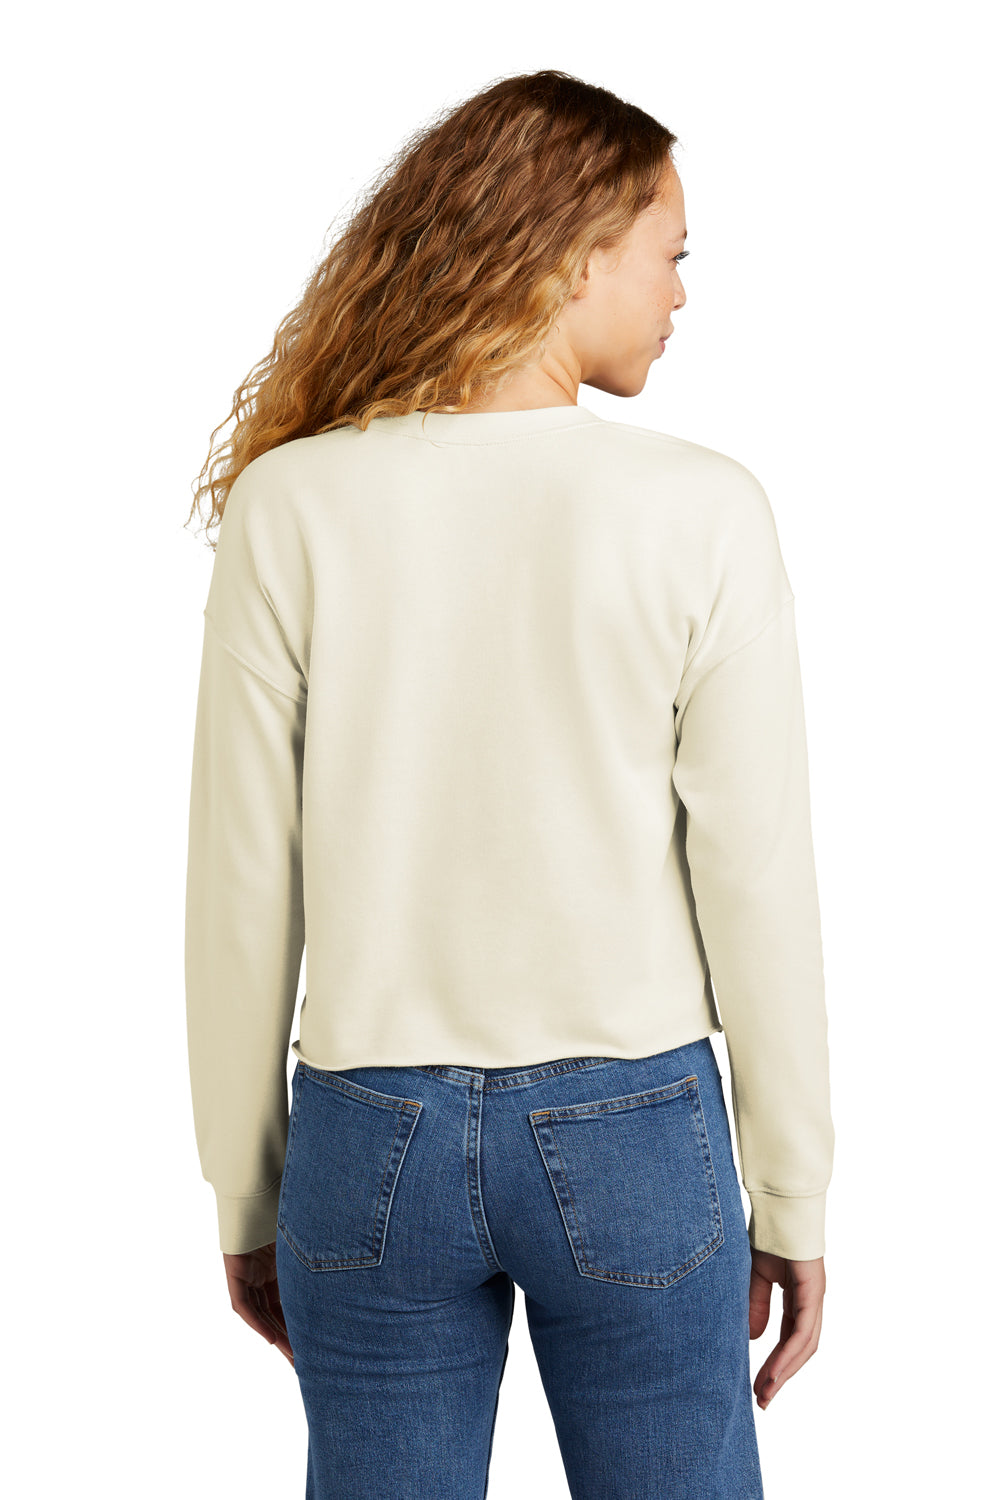 New Era Womens Fleece Crop Crewneck Sweatshirt Soft Beige Back